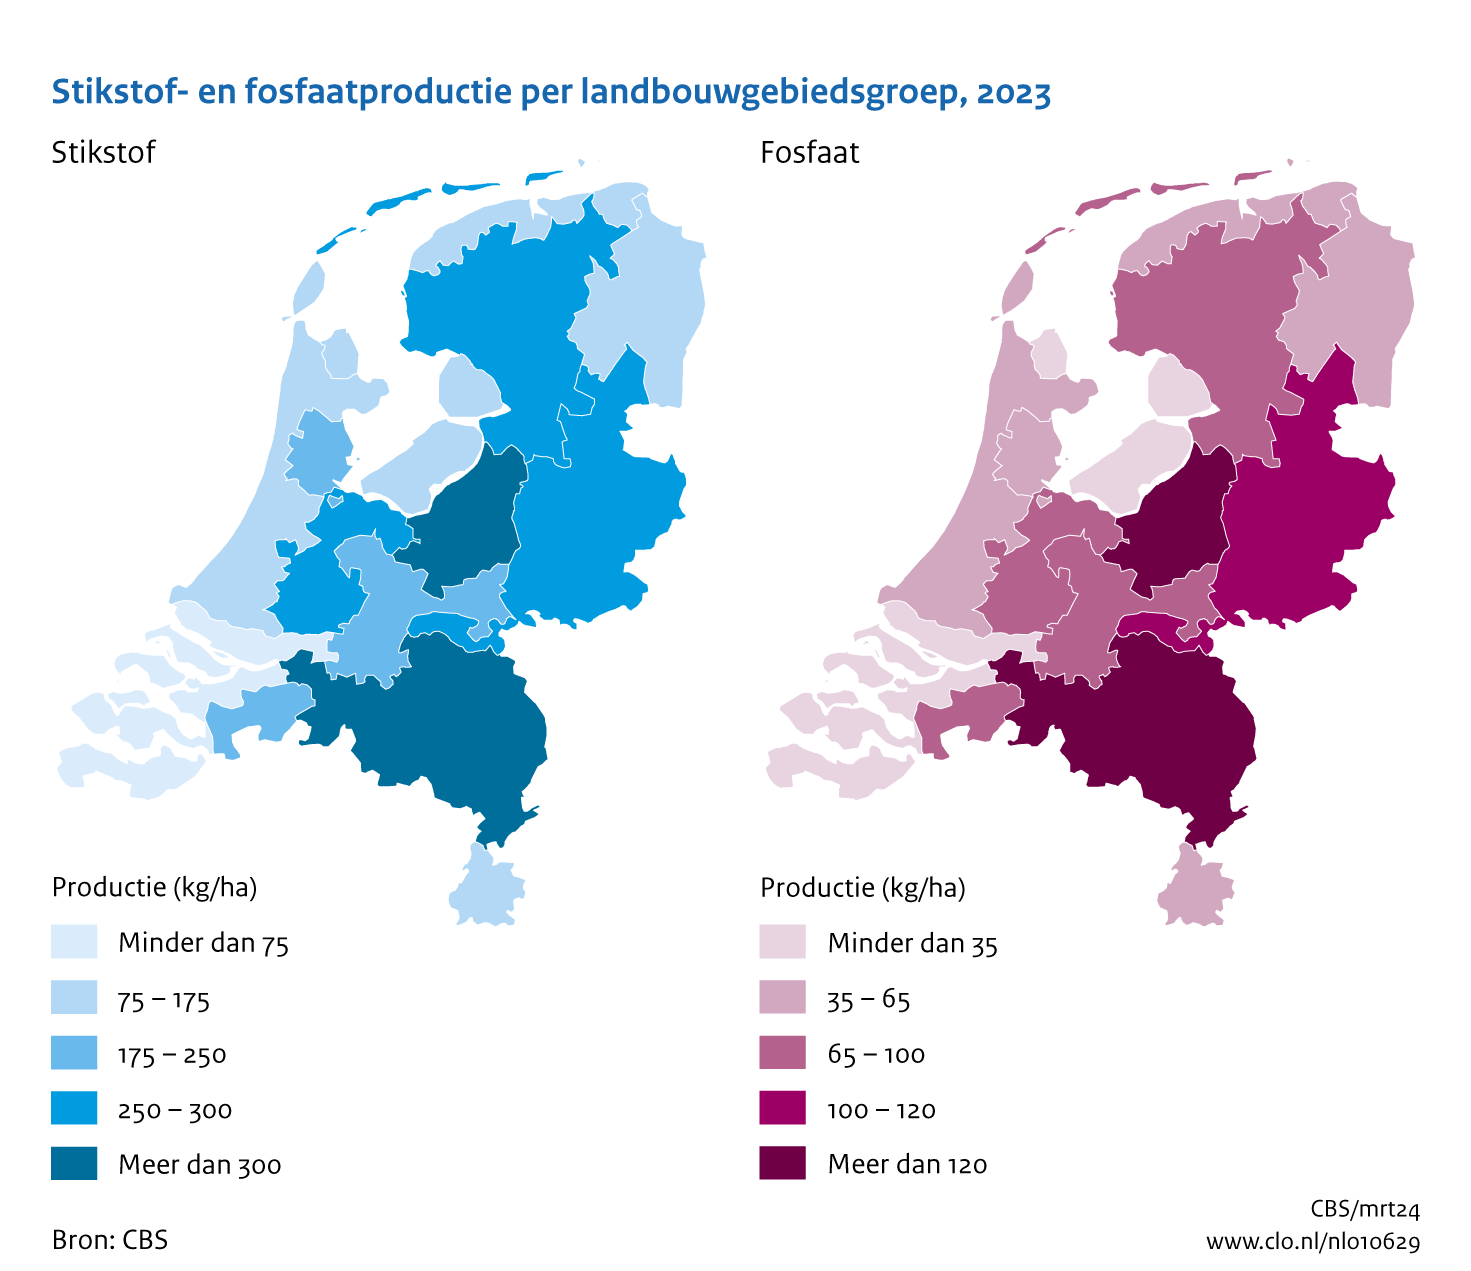 Twee kaarten met de 14 landbouwgebruiksgebieden in Nederland. De linker kaart geeft de productie van stikstof weer en de rechter kaart de productie van fosfaat. De hoogste productie in kg/ha in 2023 van zowel stikstof als fosfaat vindt plaats in de veehouderijgebieden.